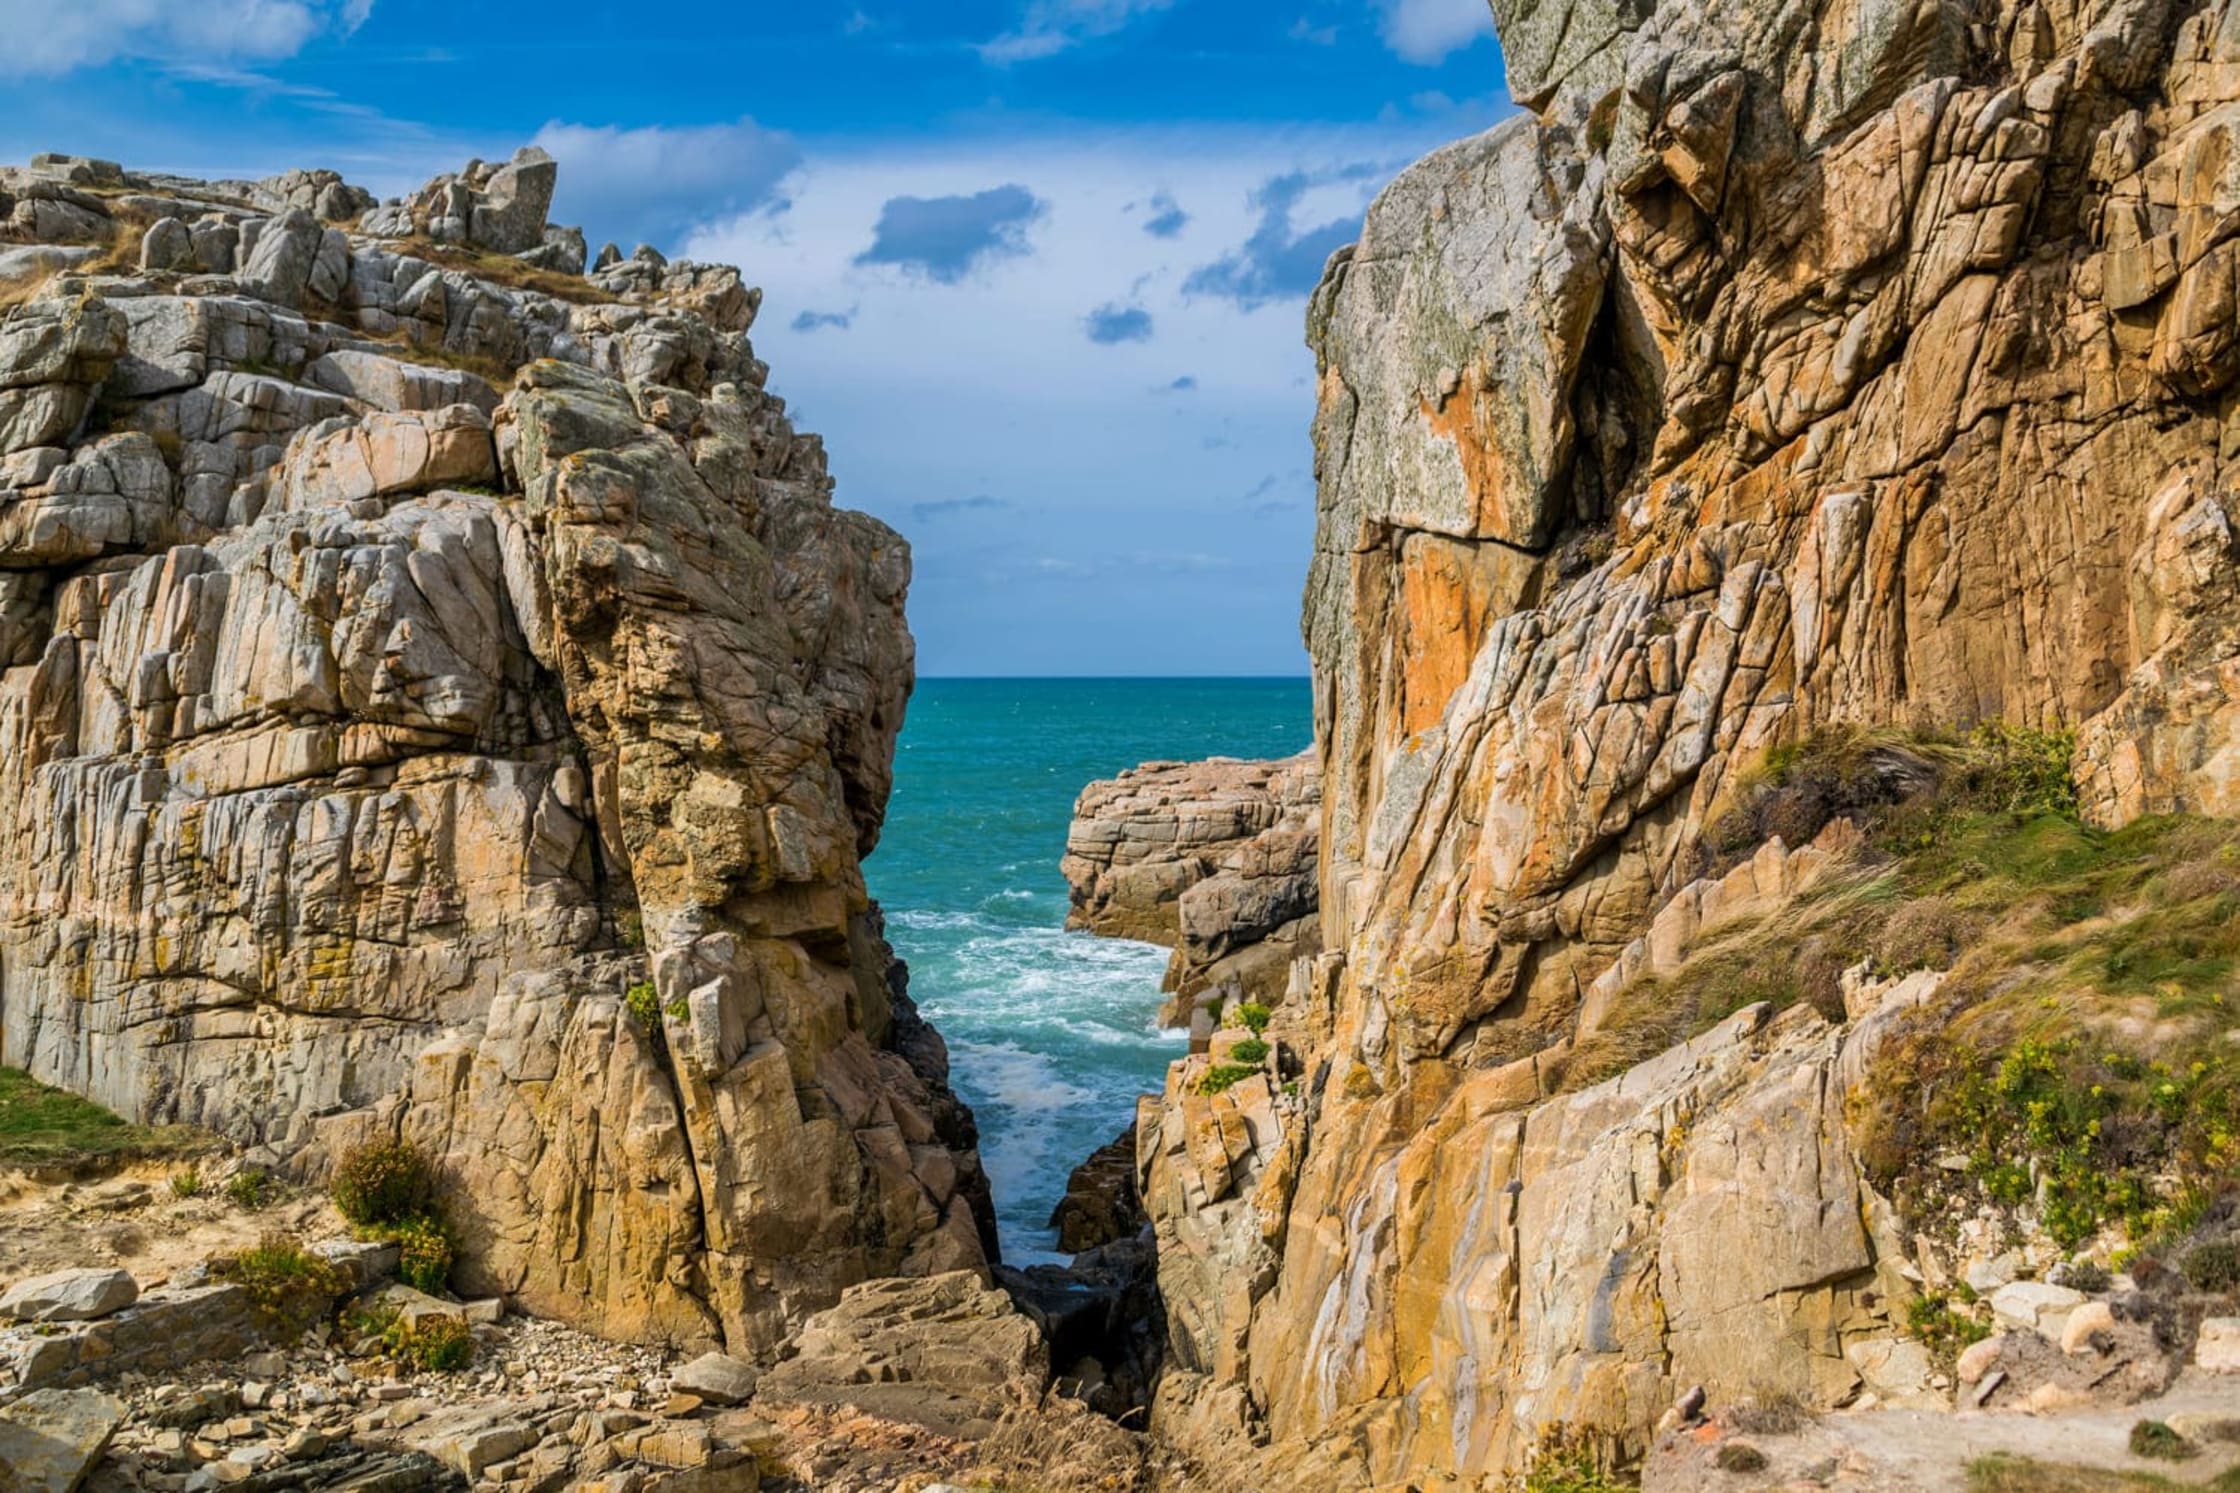 Randonnée gouffre de Plougrescant : faille rocheuse avec vue sur la mer turquoise et le ciel bleu